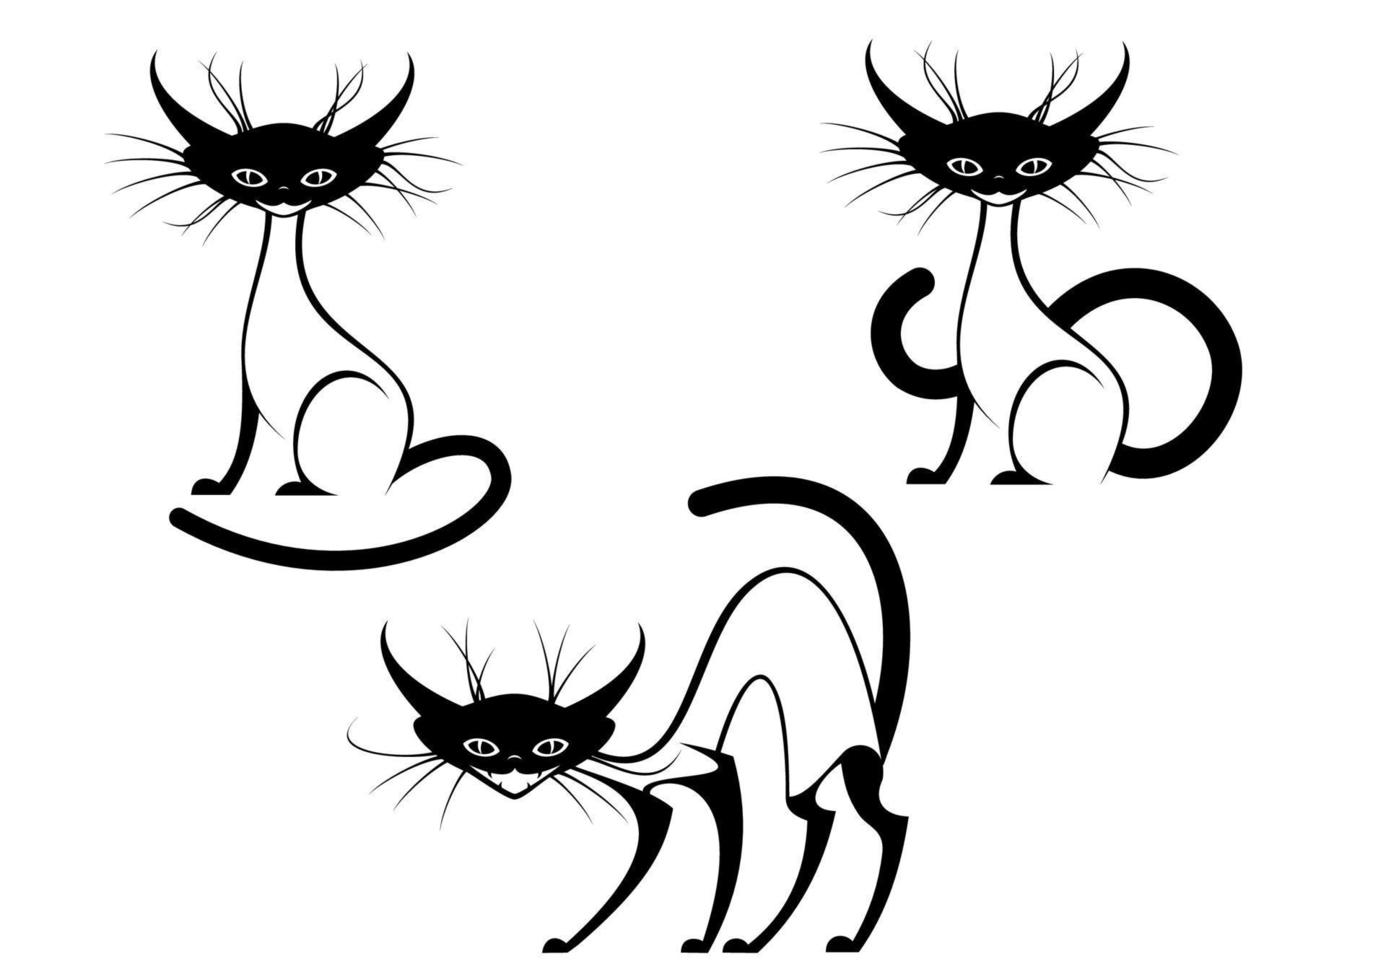 zwart schattig tekenfilm katten vector